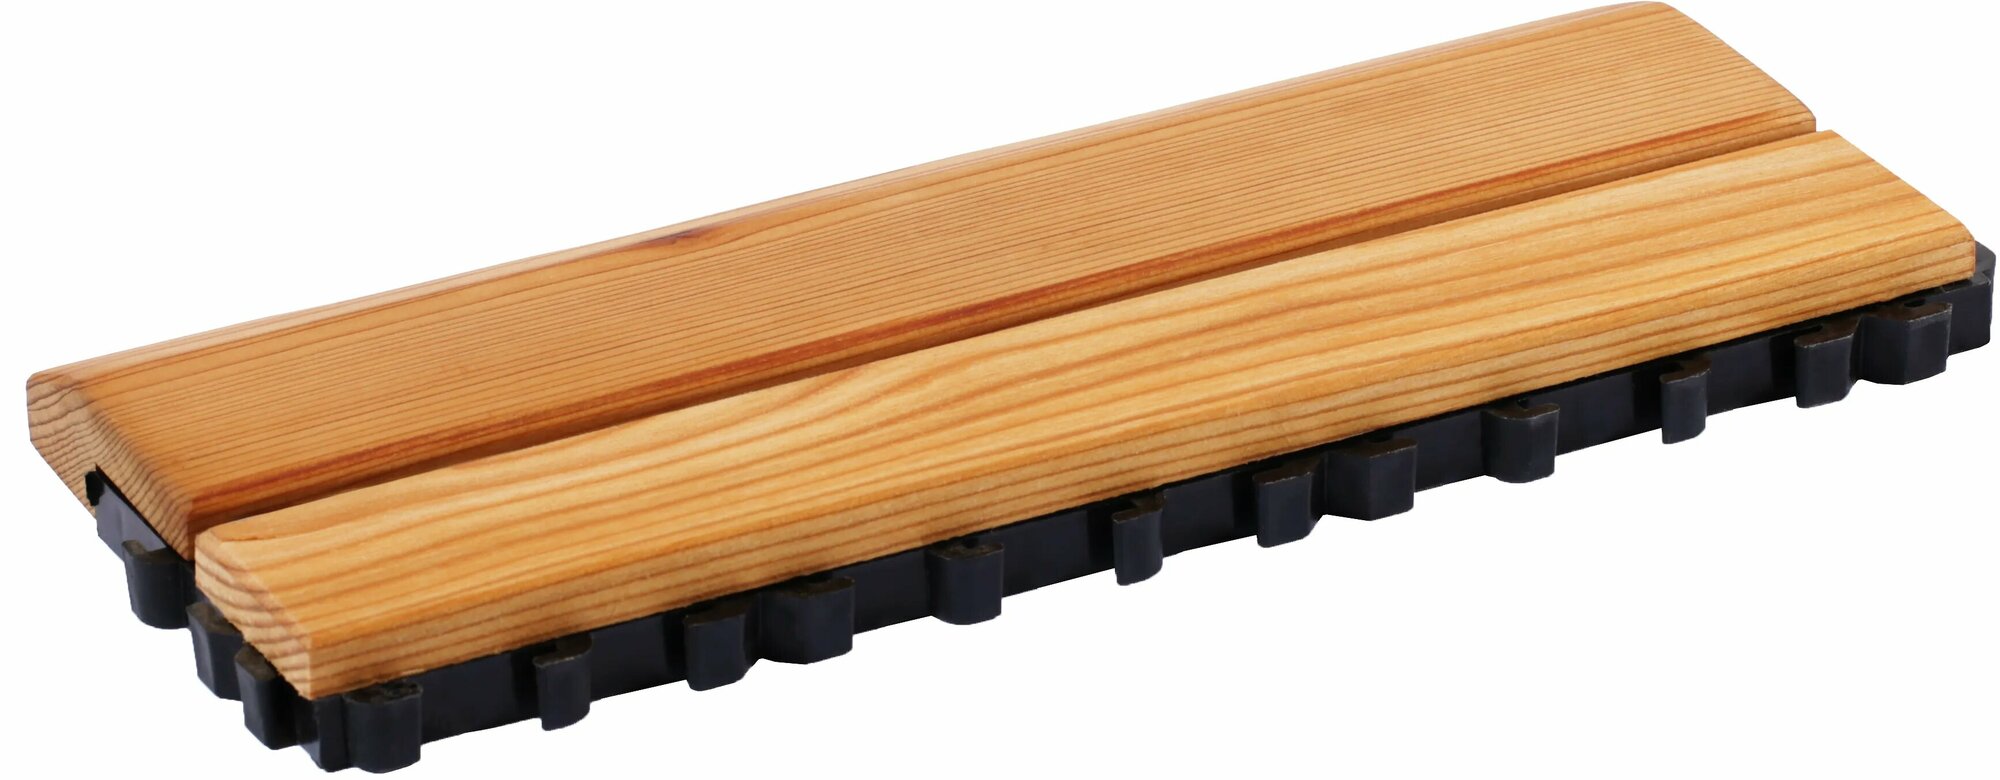 SAWO Коврик деревянный на пол, 595-D-SID боковой